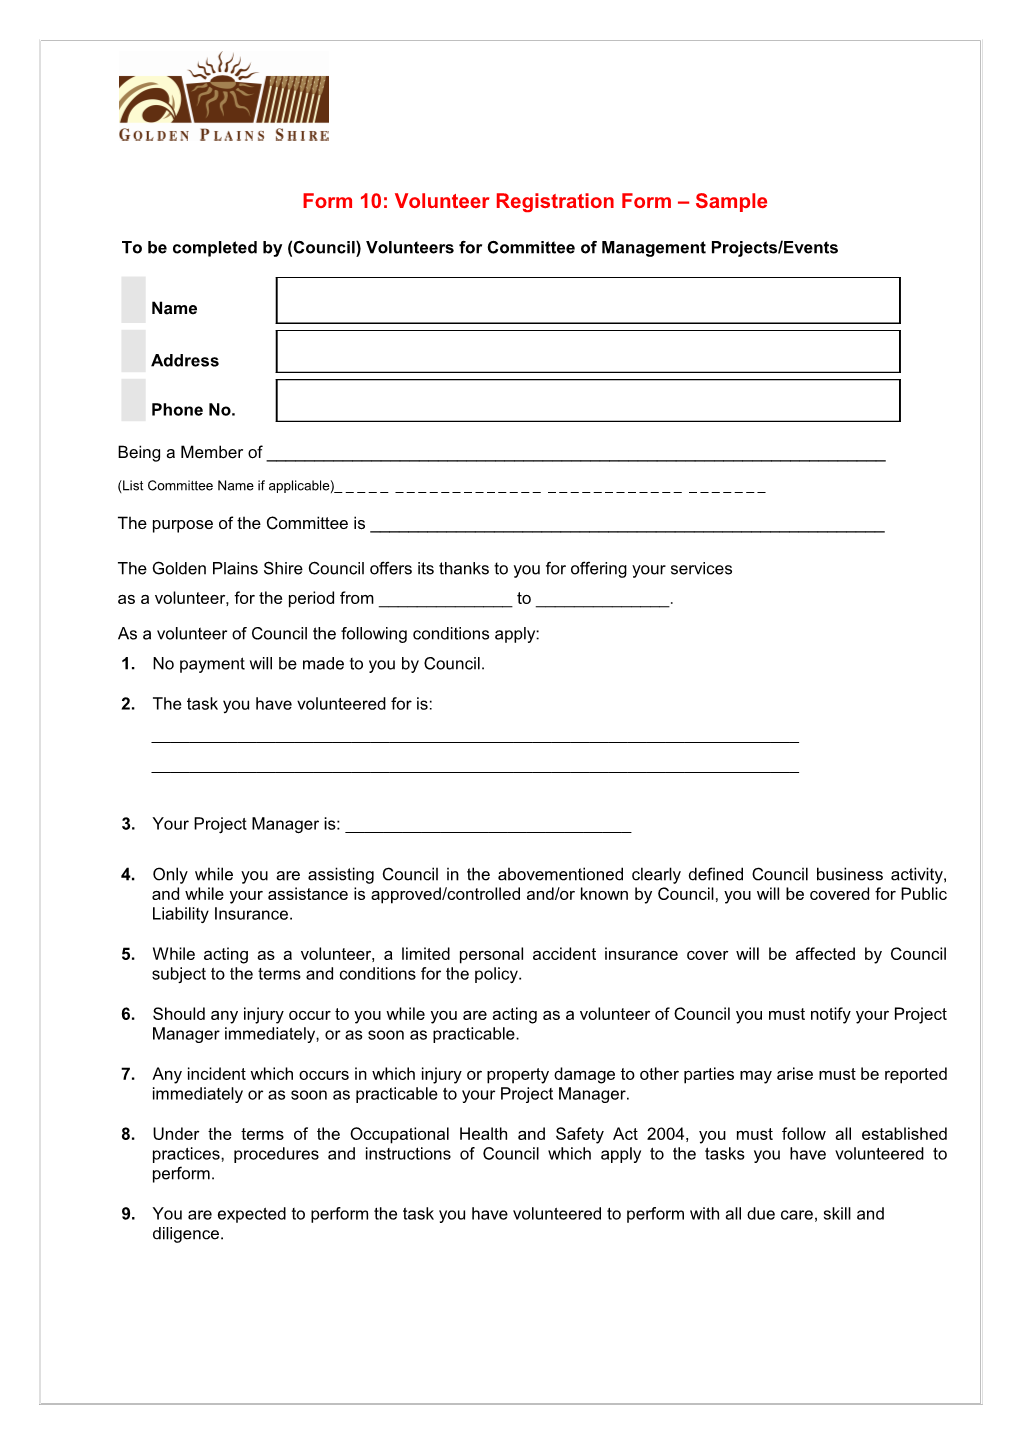 Form 10: Volunteer Registration Form Sample